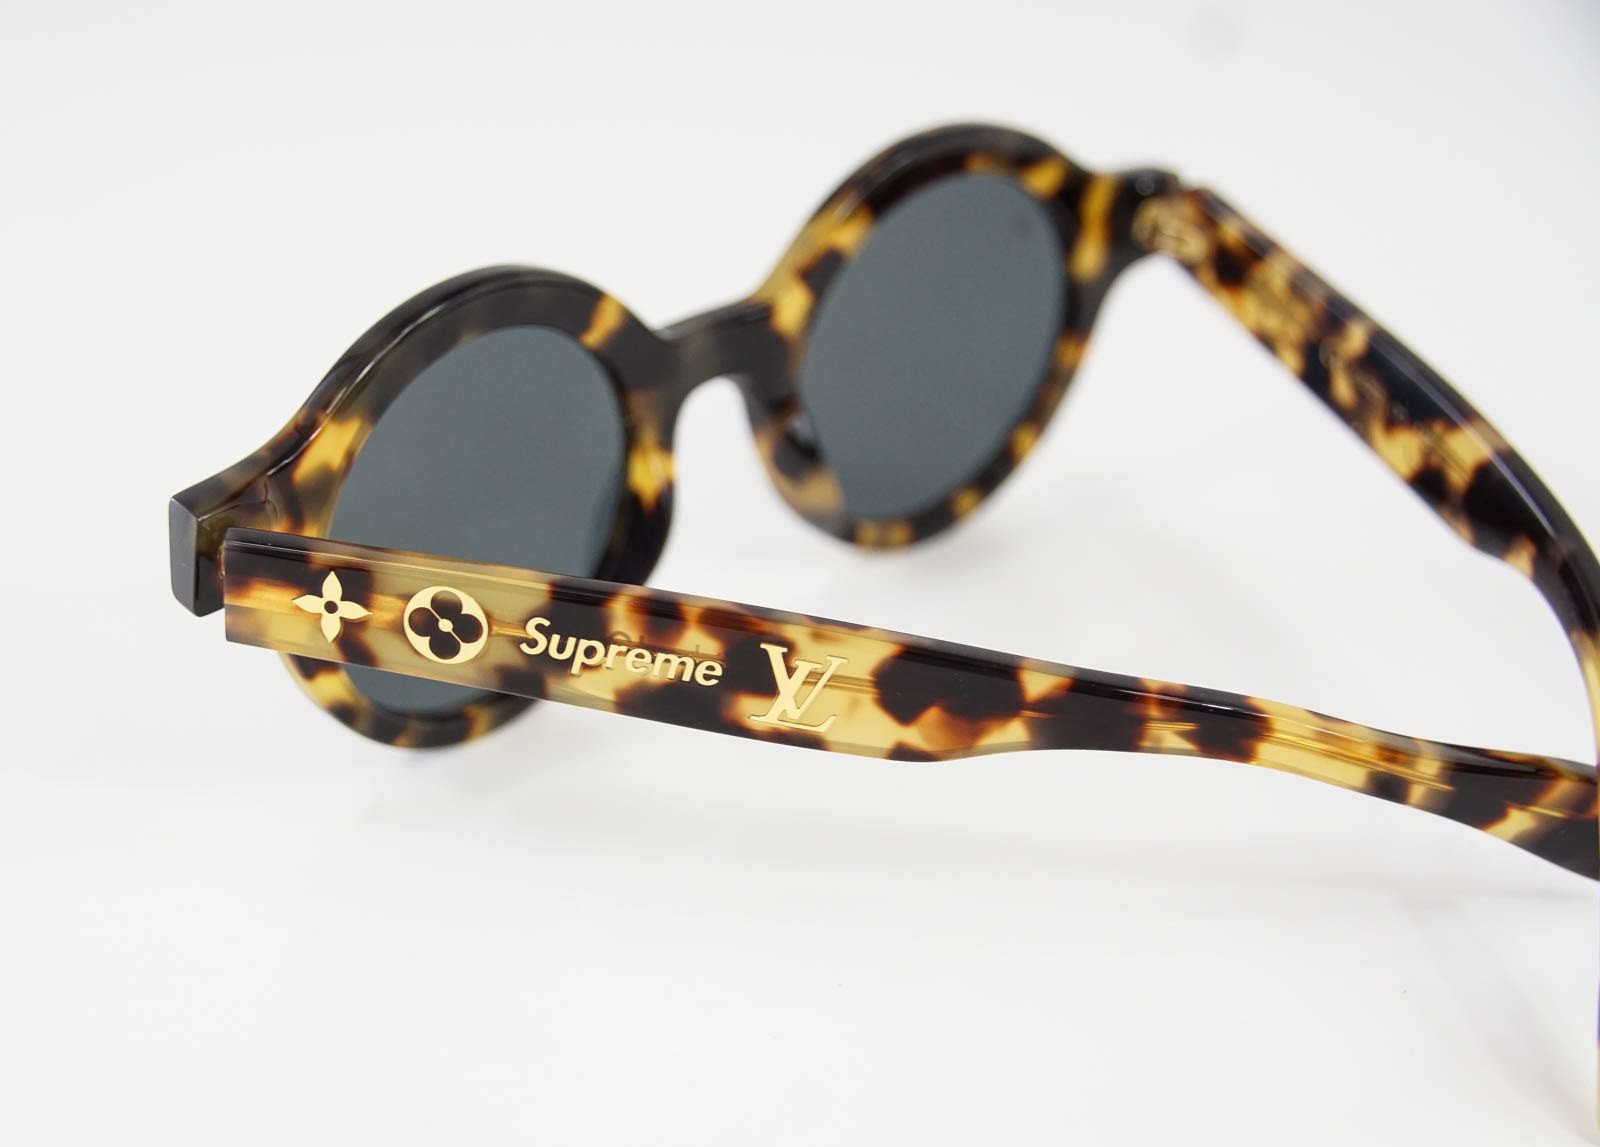 Louis Vuitton Sunglasses  Louis vuitton glasses, Louis vuitton sunglasses, Louis  vuitton shop